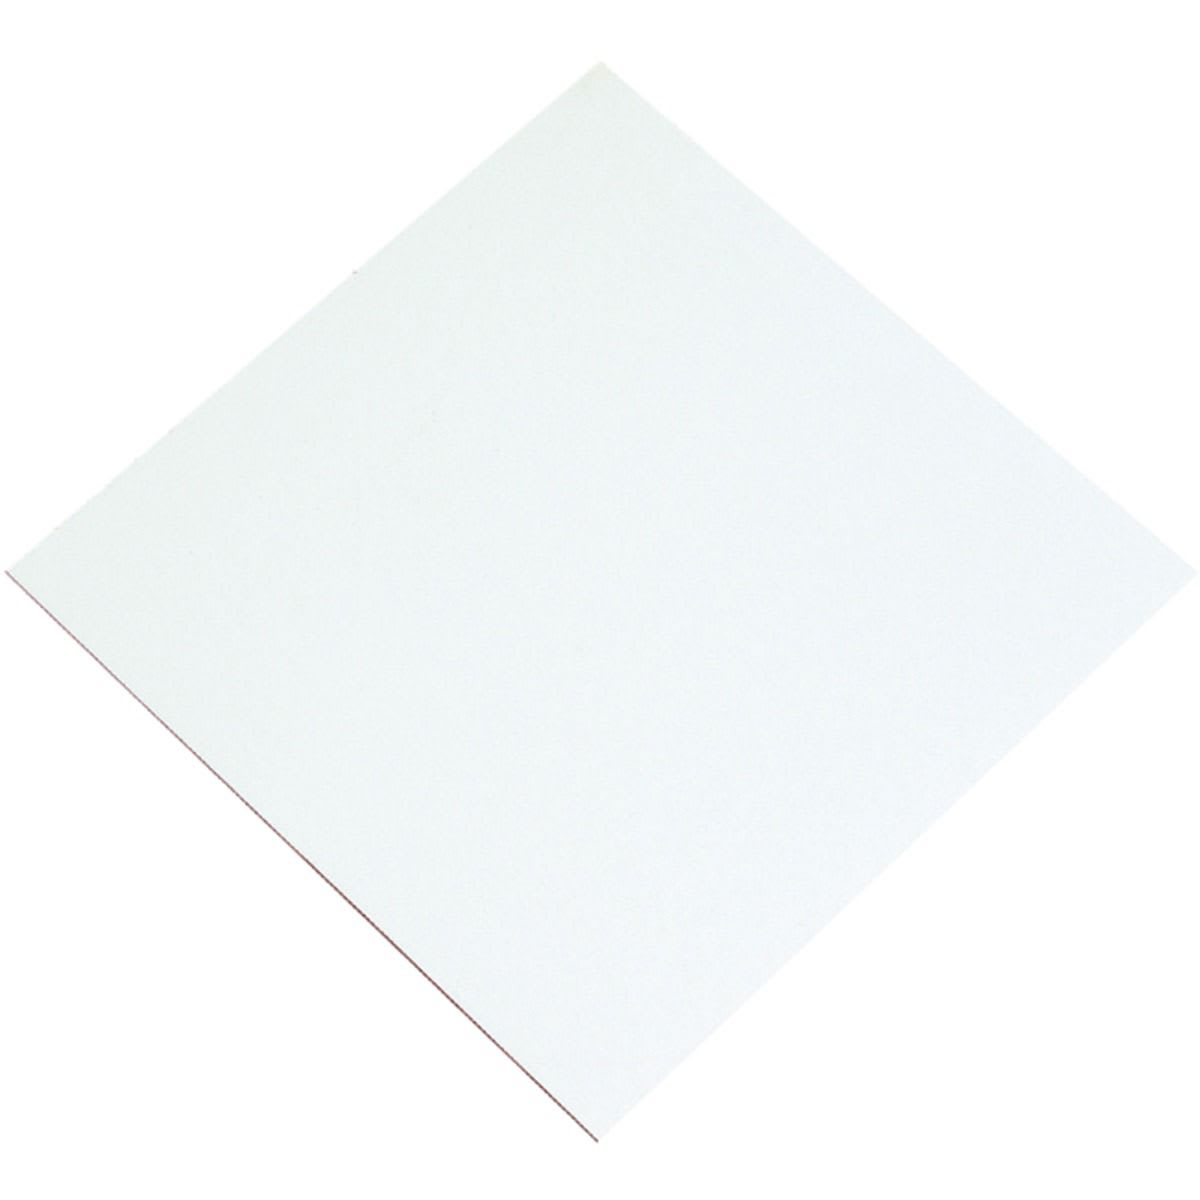 General Purpose White Faced Hardboard Sheet - 3